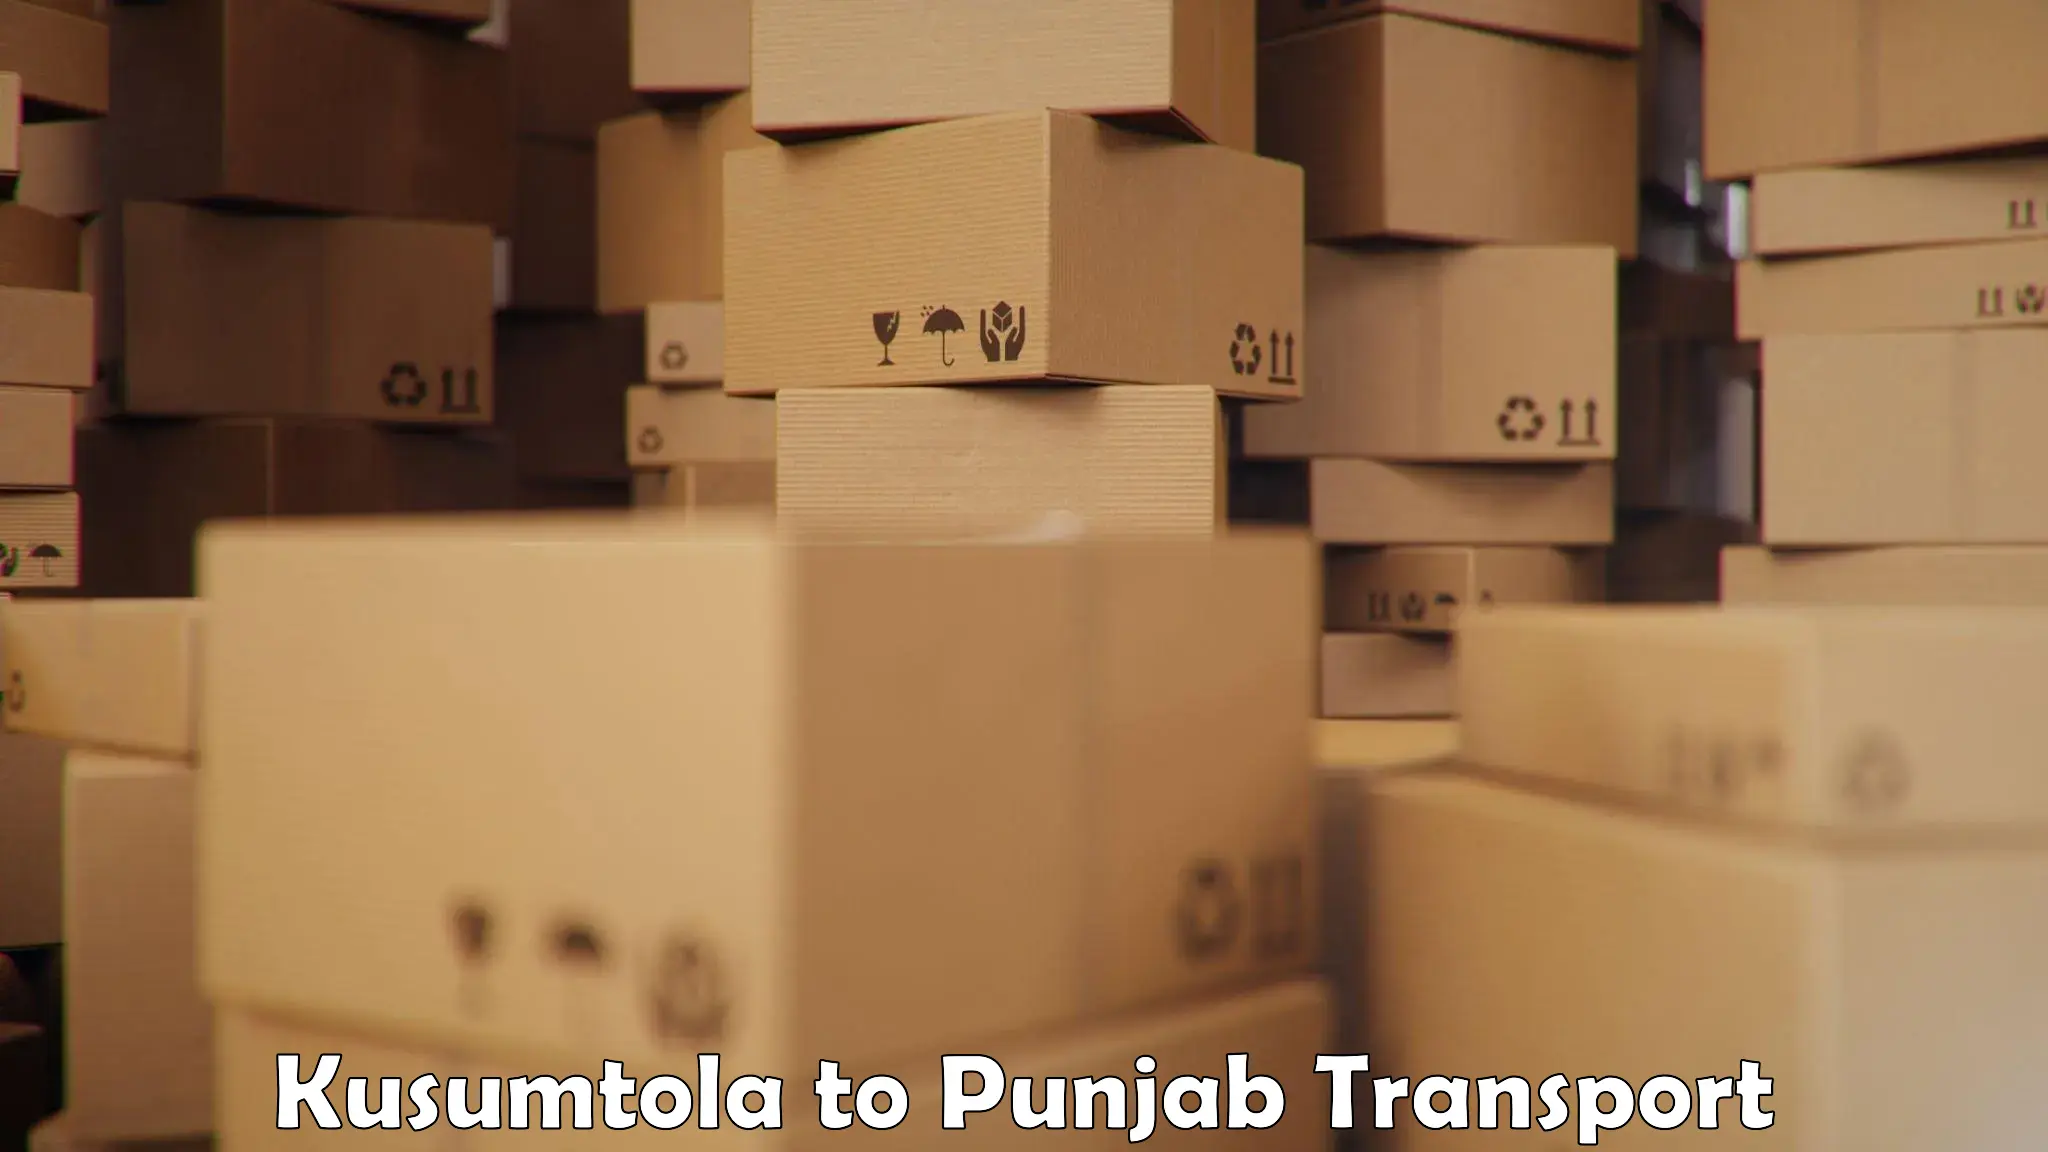 Furniture transport service Kusumtola to IIT Ropar